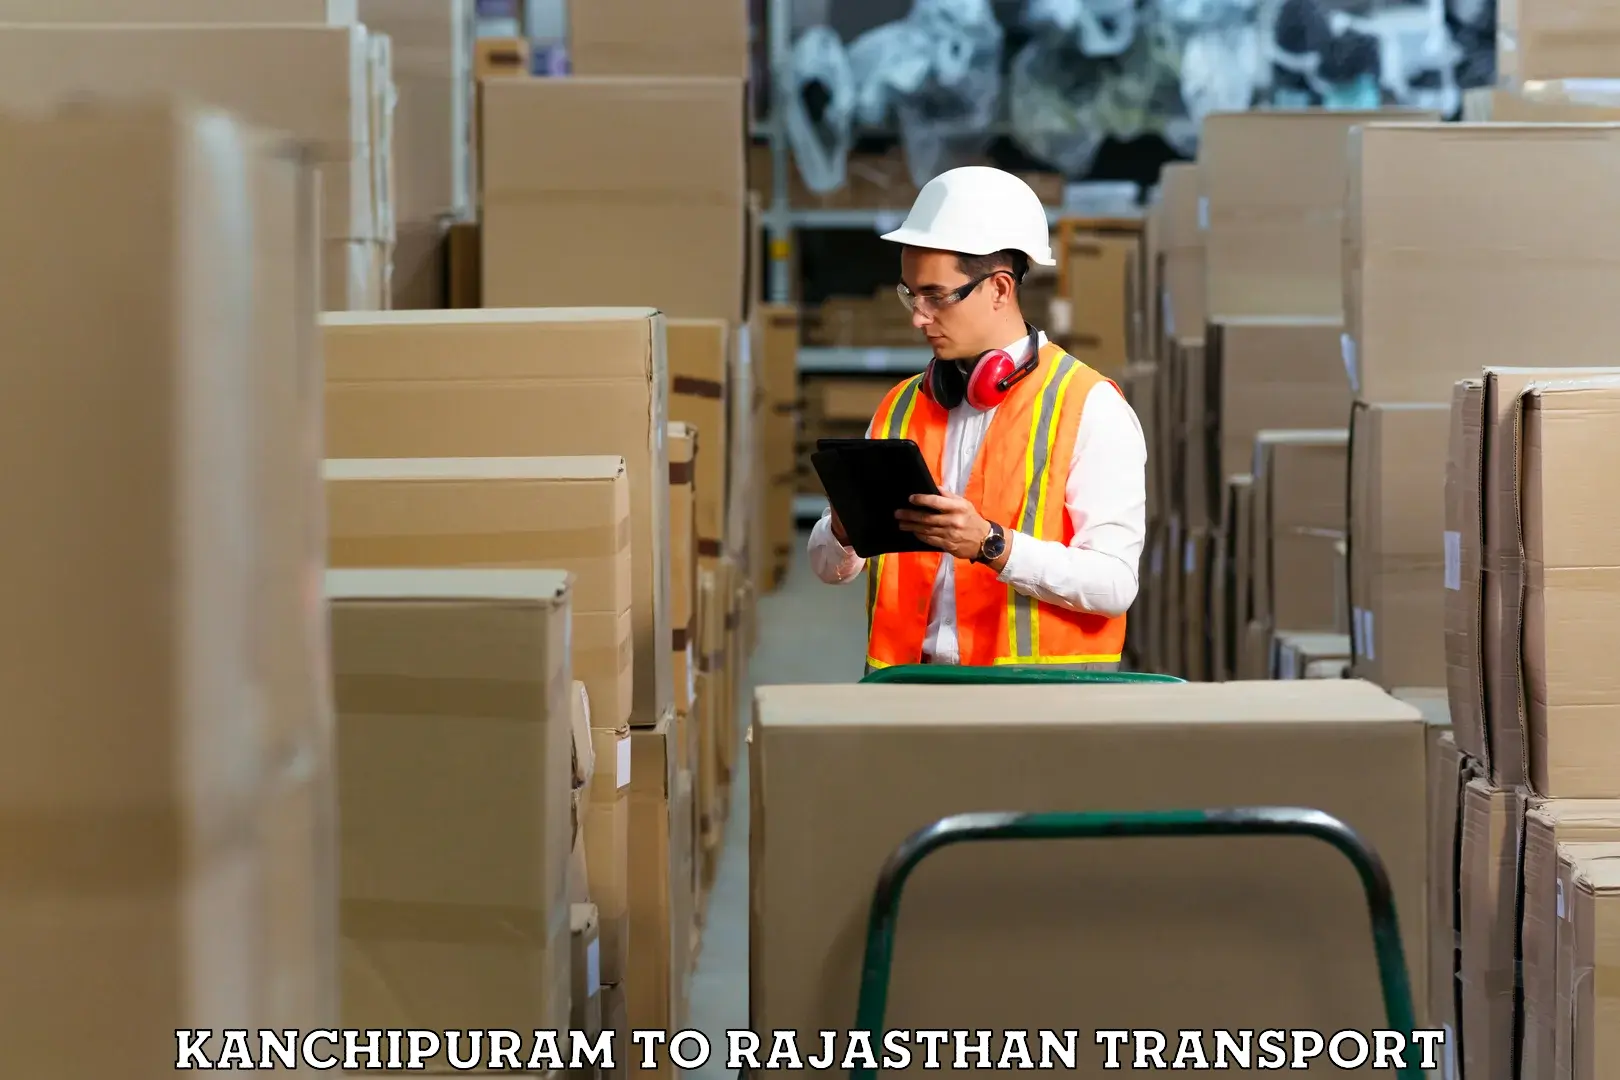 Furniture transport service Kanchipuram to Jojawar